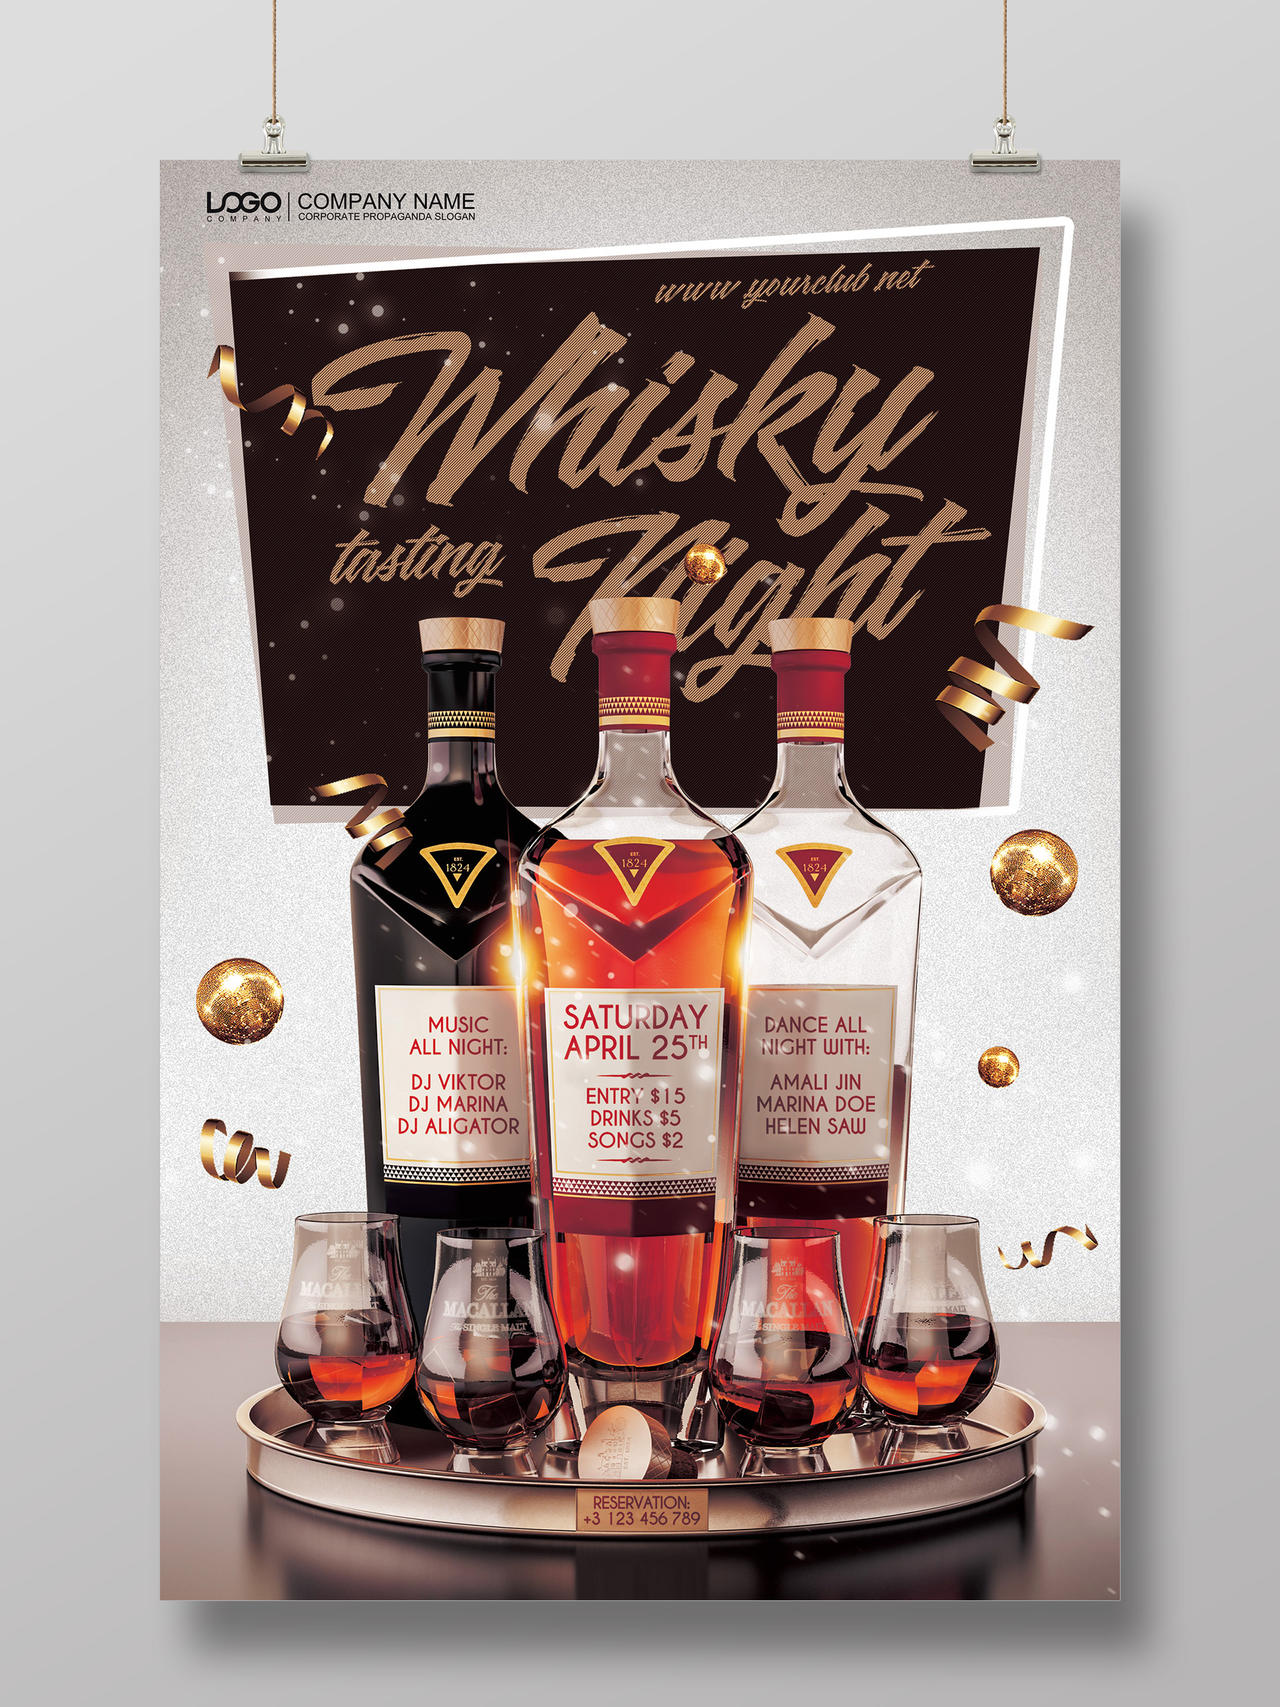 洋酒红酒威士忌酒水促销酒吧宣传广告海报设计